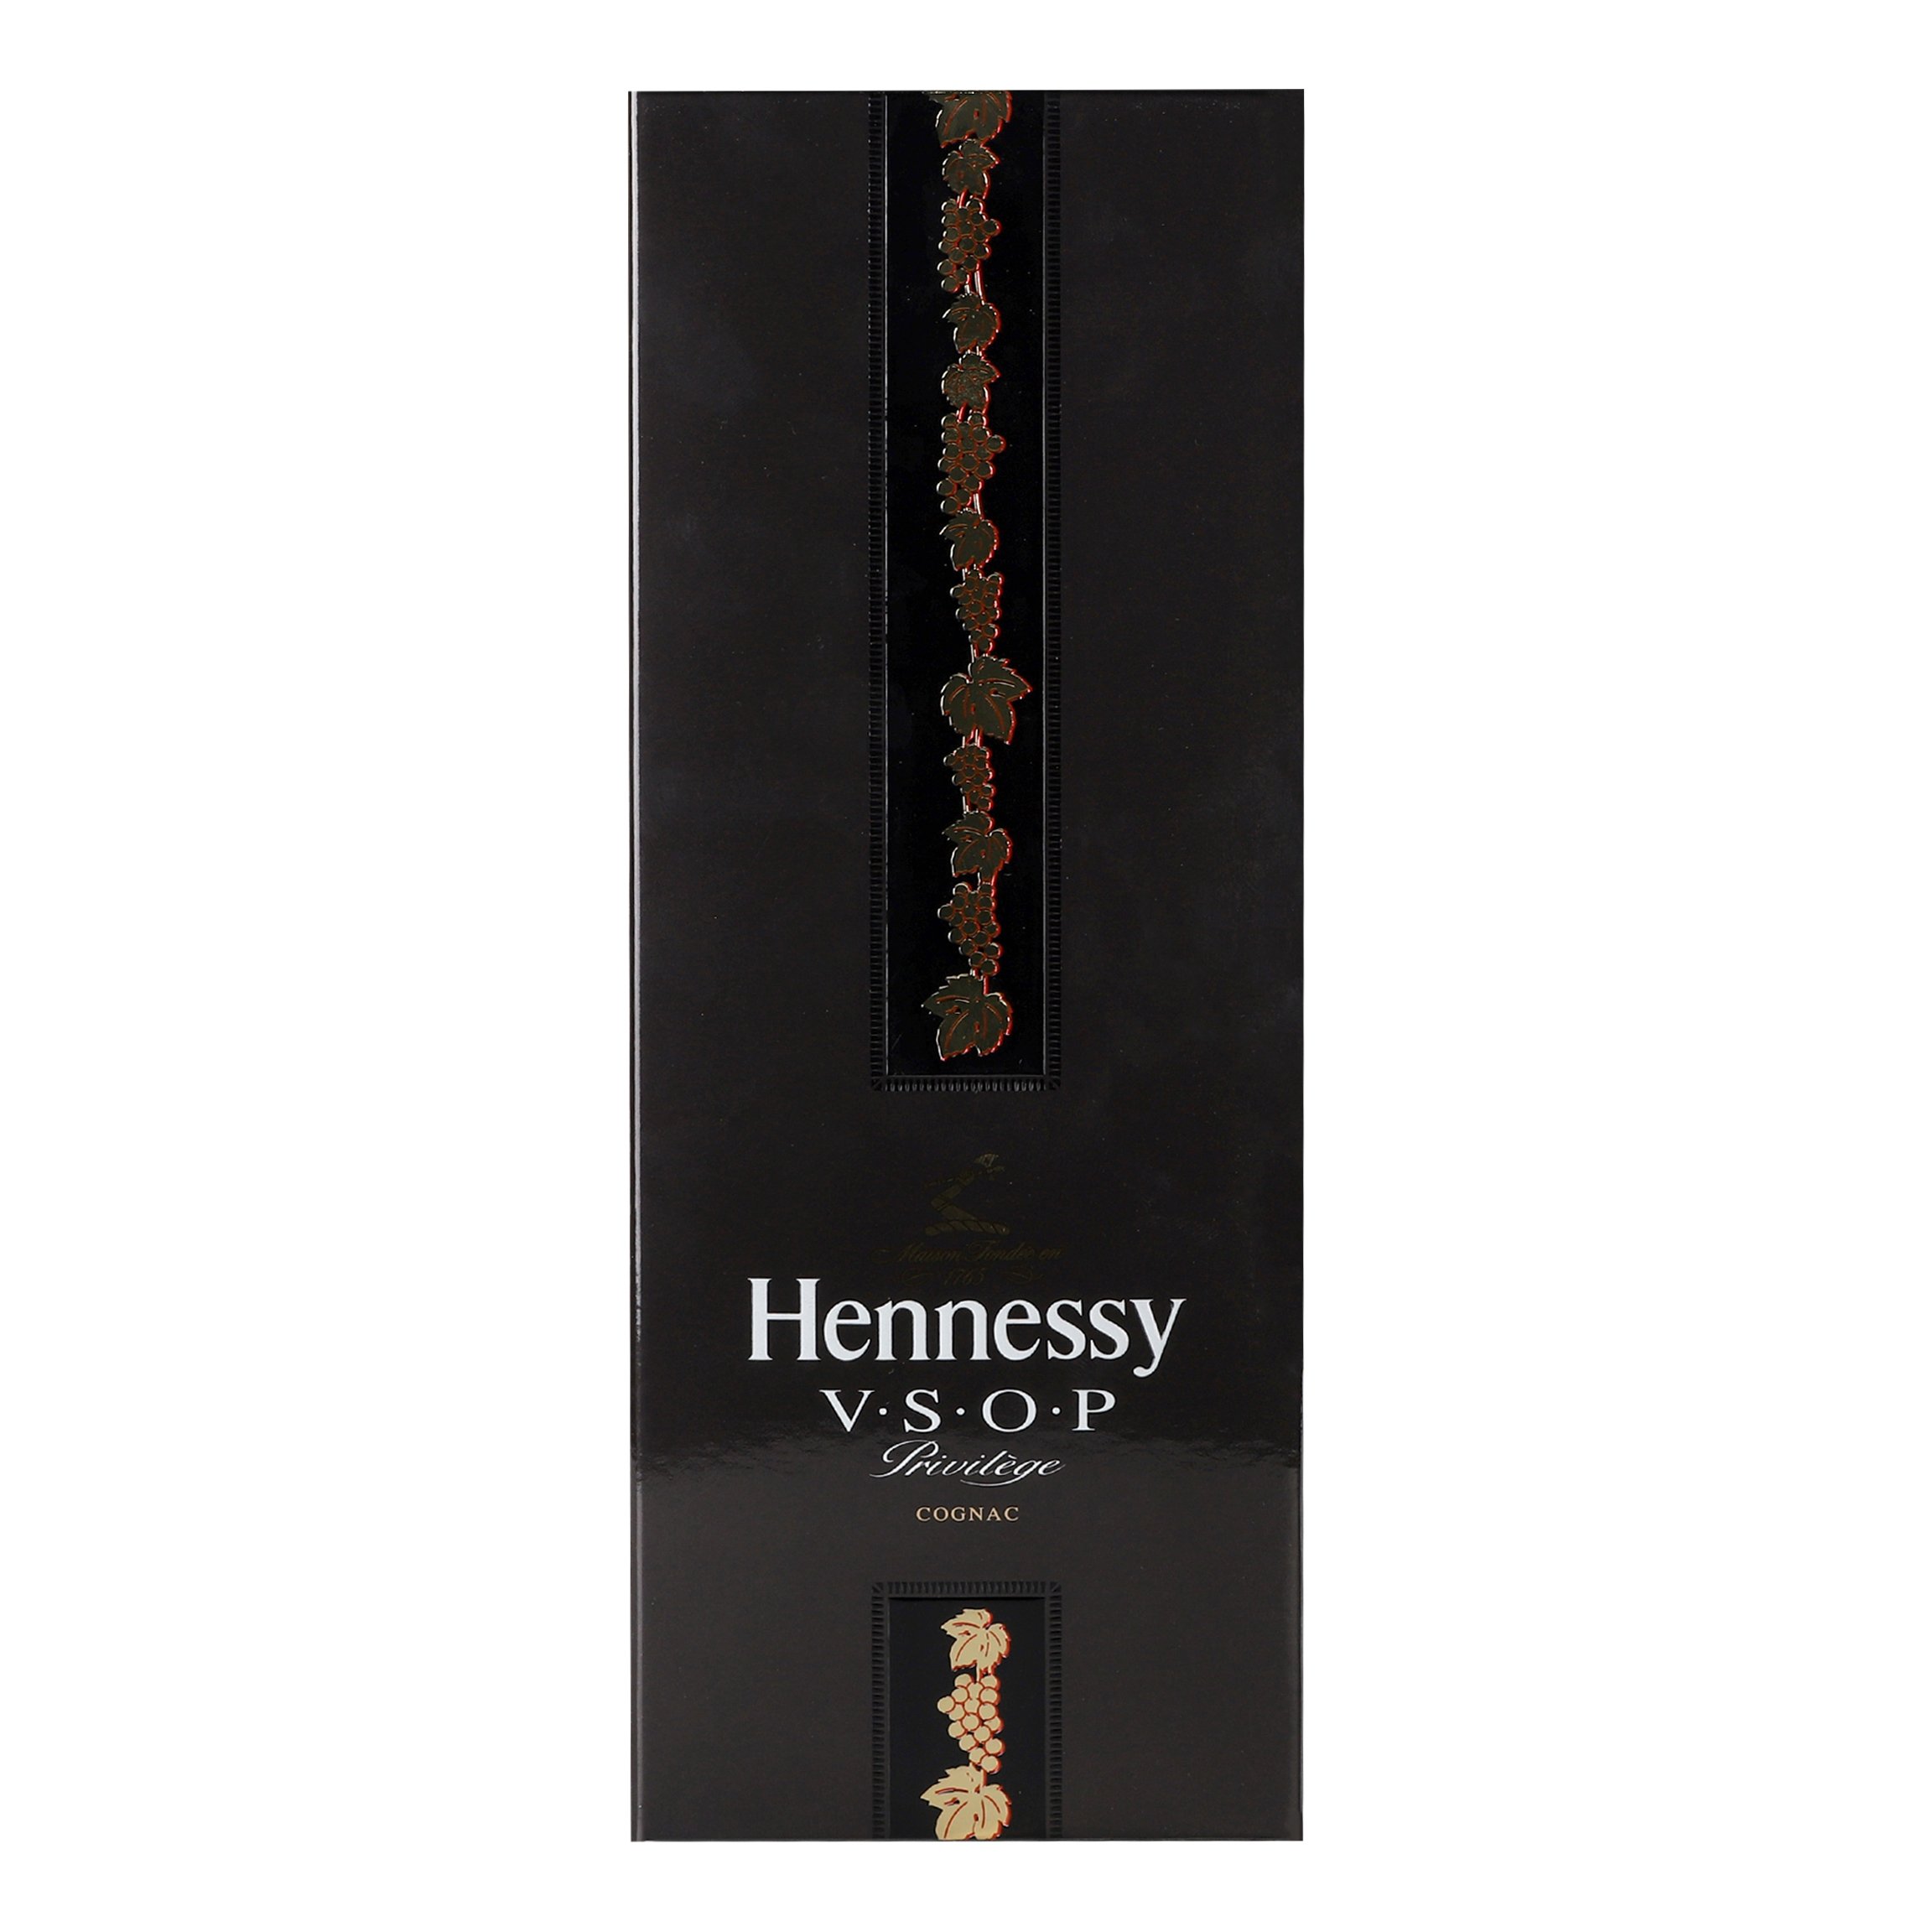 Коньяк Hennessy VSOP 6 років витримки, в подарунковій упаковці, 40%, 0,7 л (10021) - фото 3